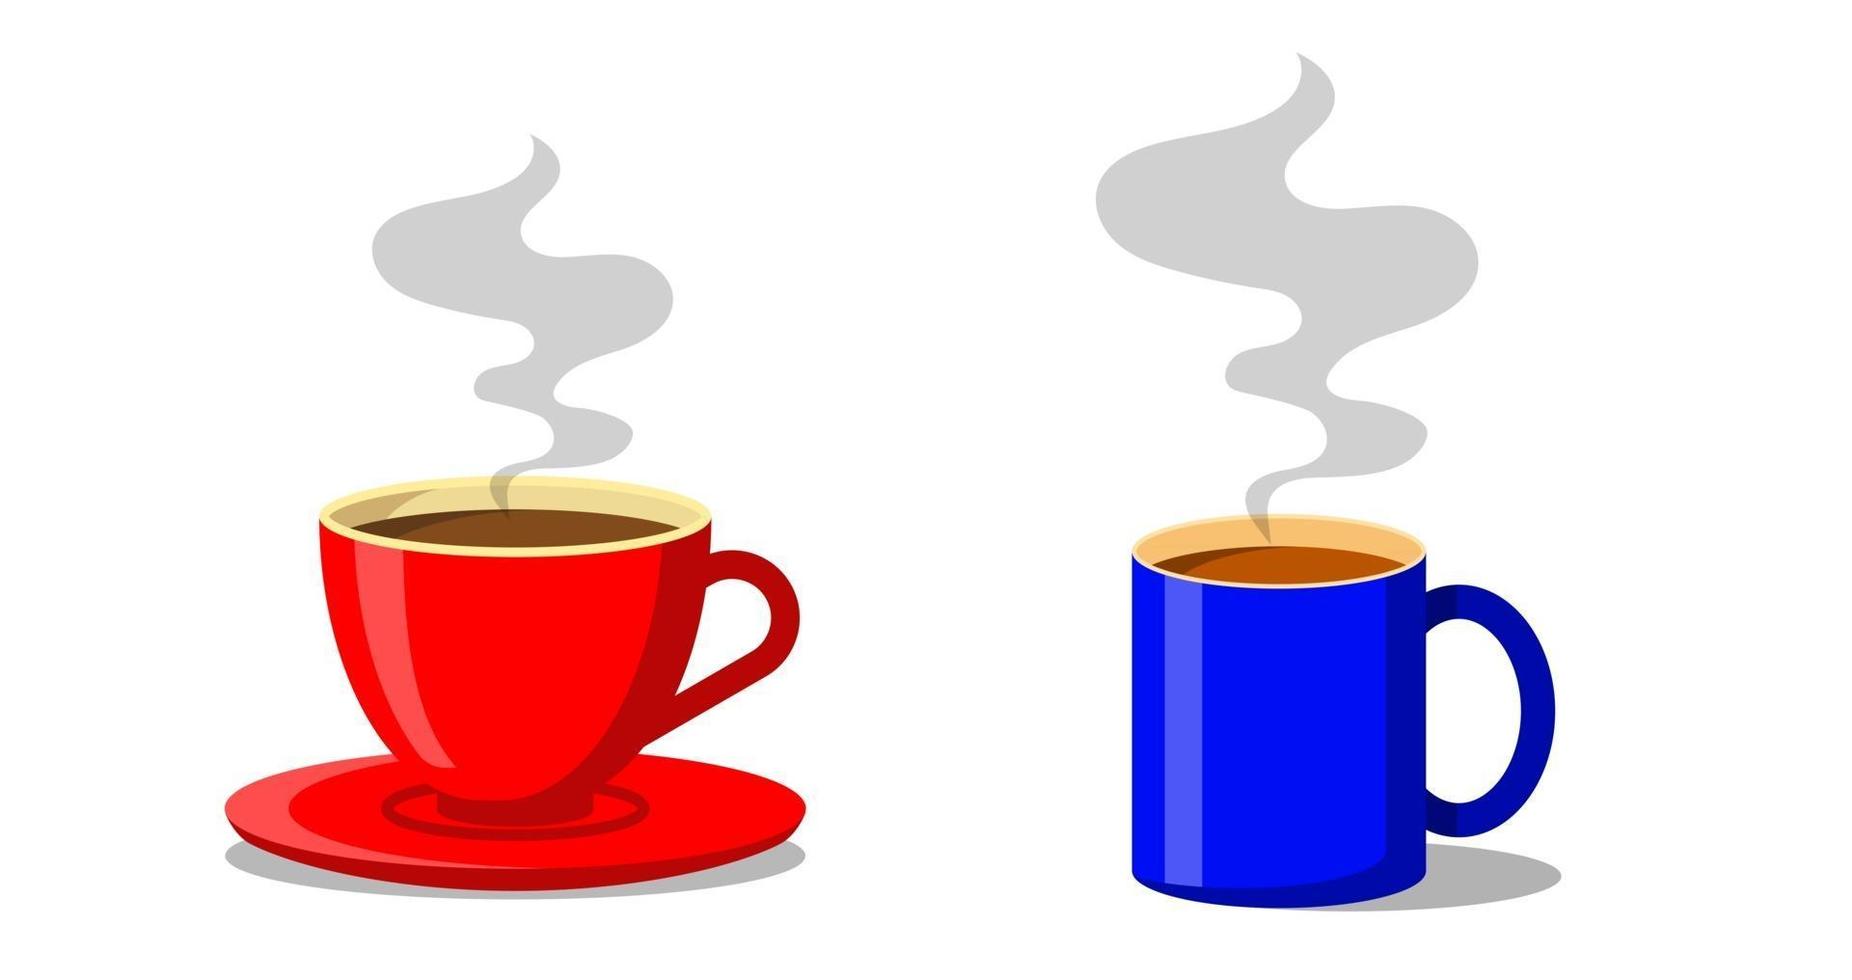 röd och blå kopp kaffe eller tekoppar med rök som flyter uppåt. platt stil dekorativ design för cafeteria affischer banners kort vektor